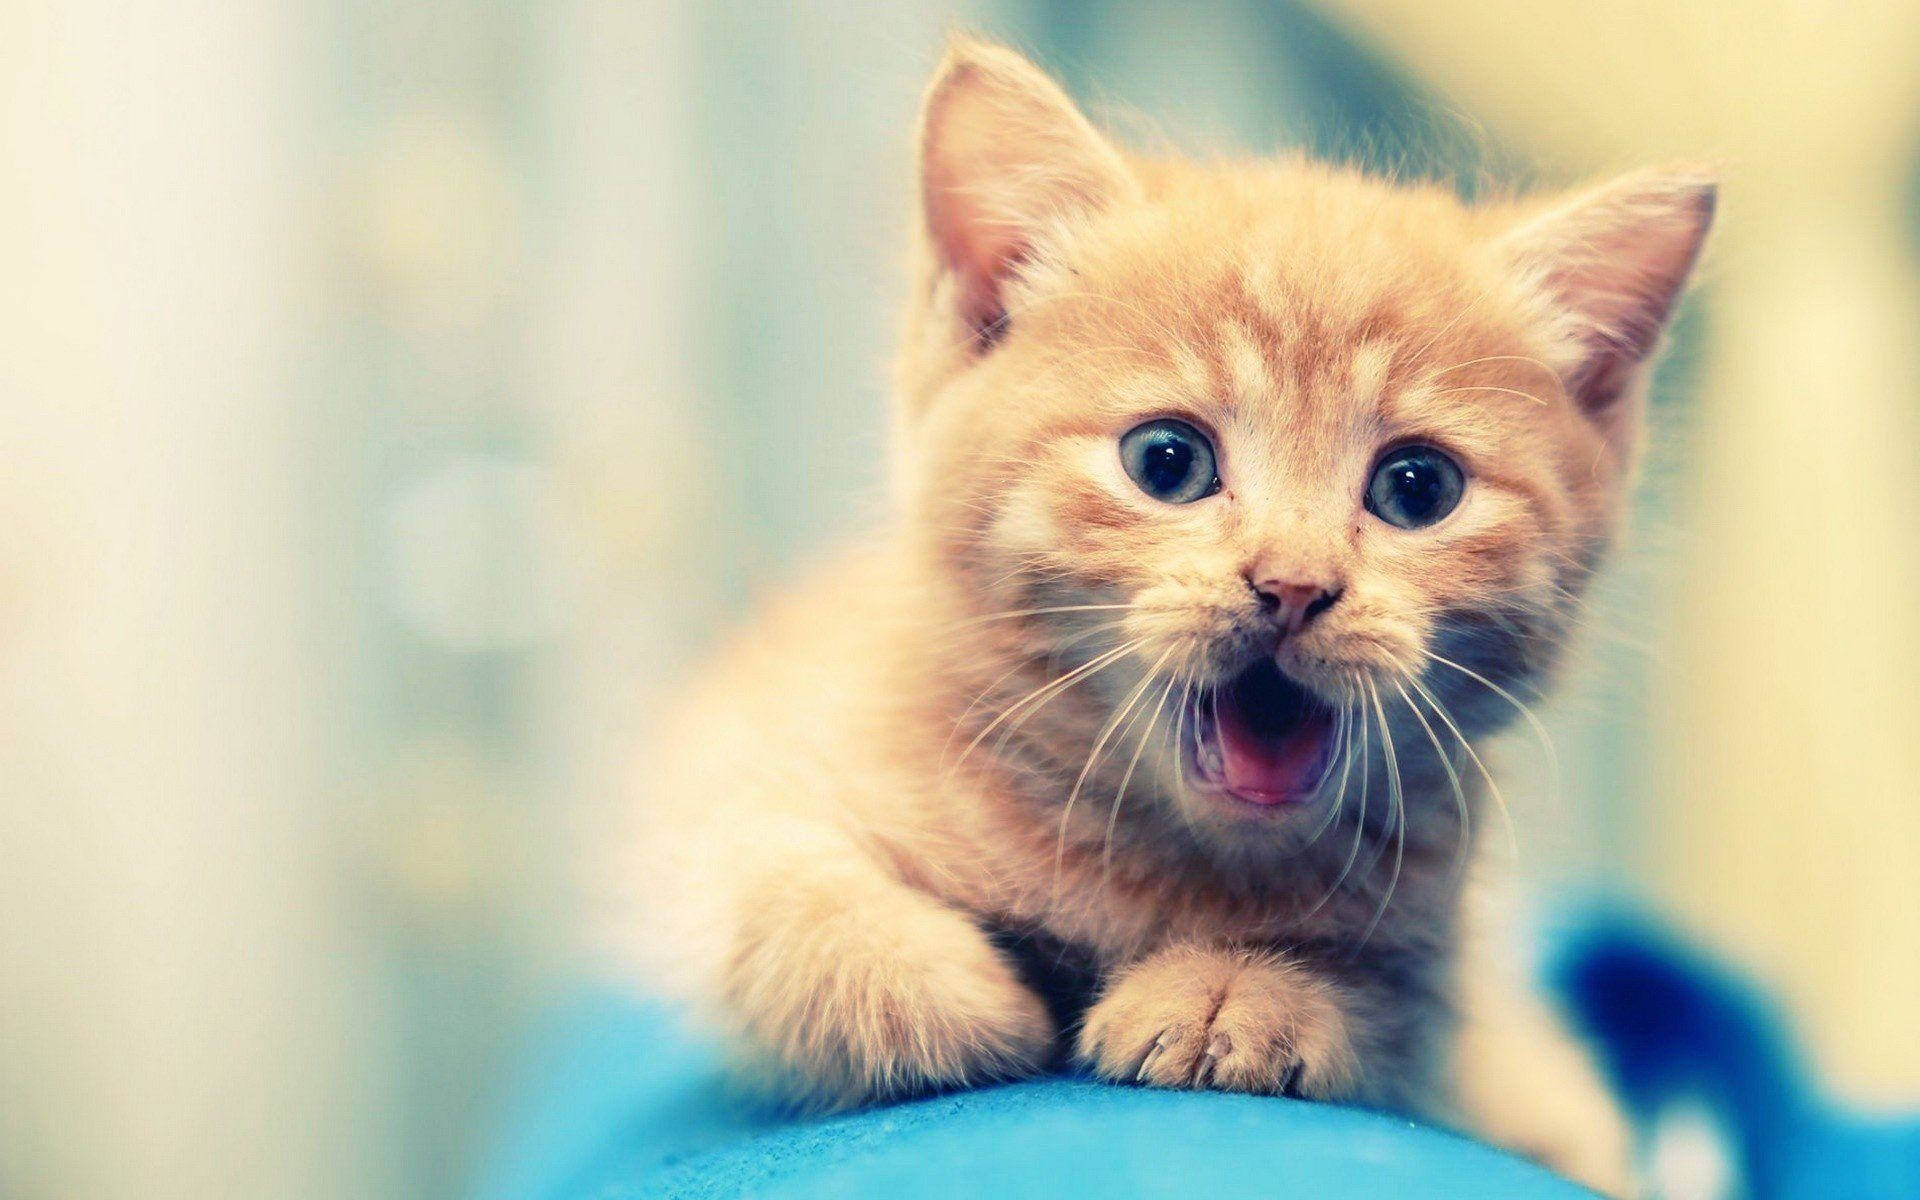 Cute Little Kitten Animal Portrait Background